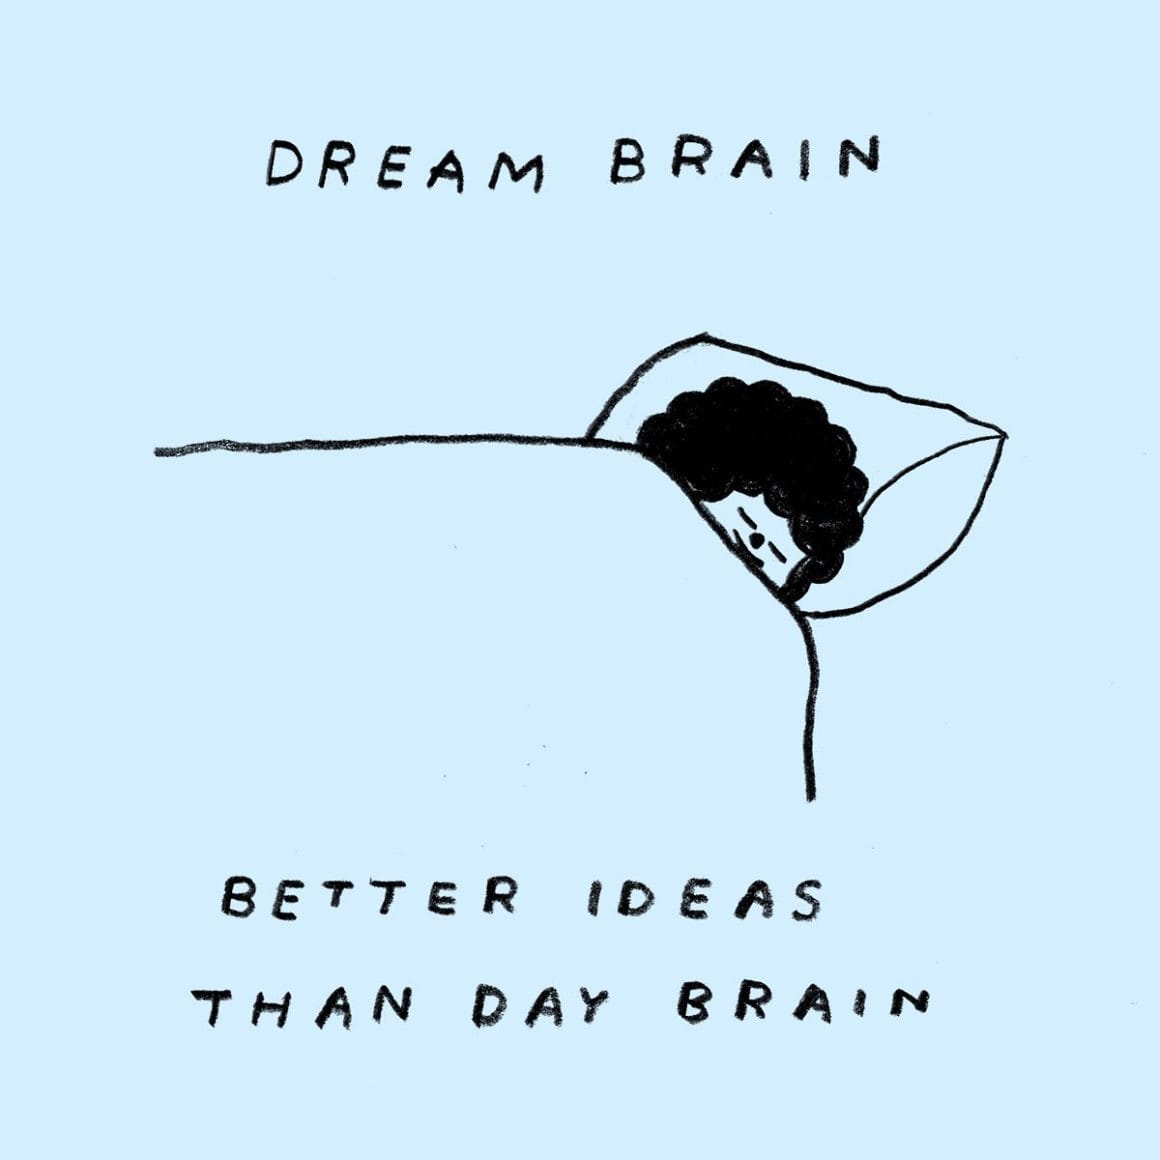 Dessin d'un petit bonhomme aux cheveux frisés en train de dormir. On peut y lire "Dream brain" et en dessous "Better ideas than day brain"